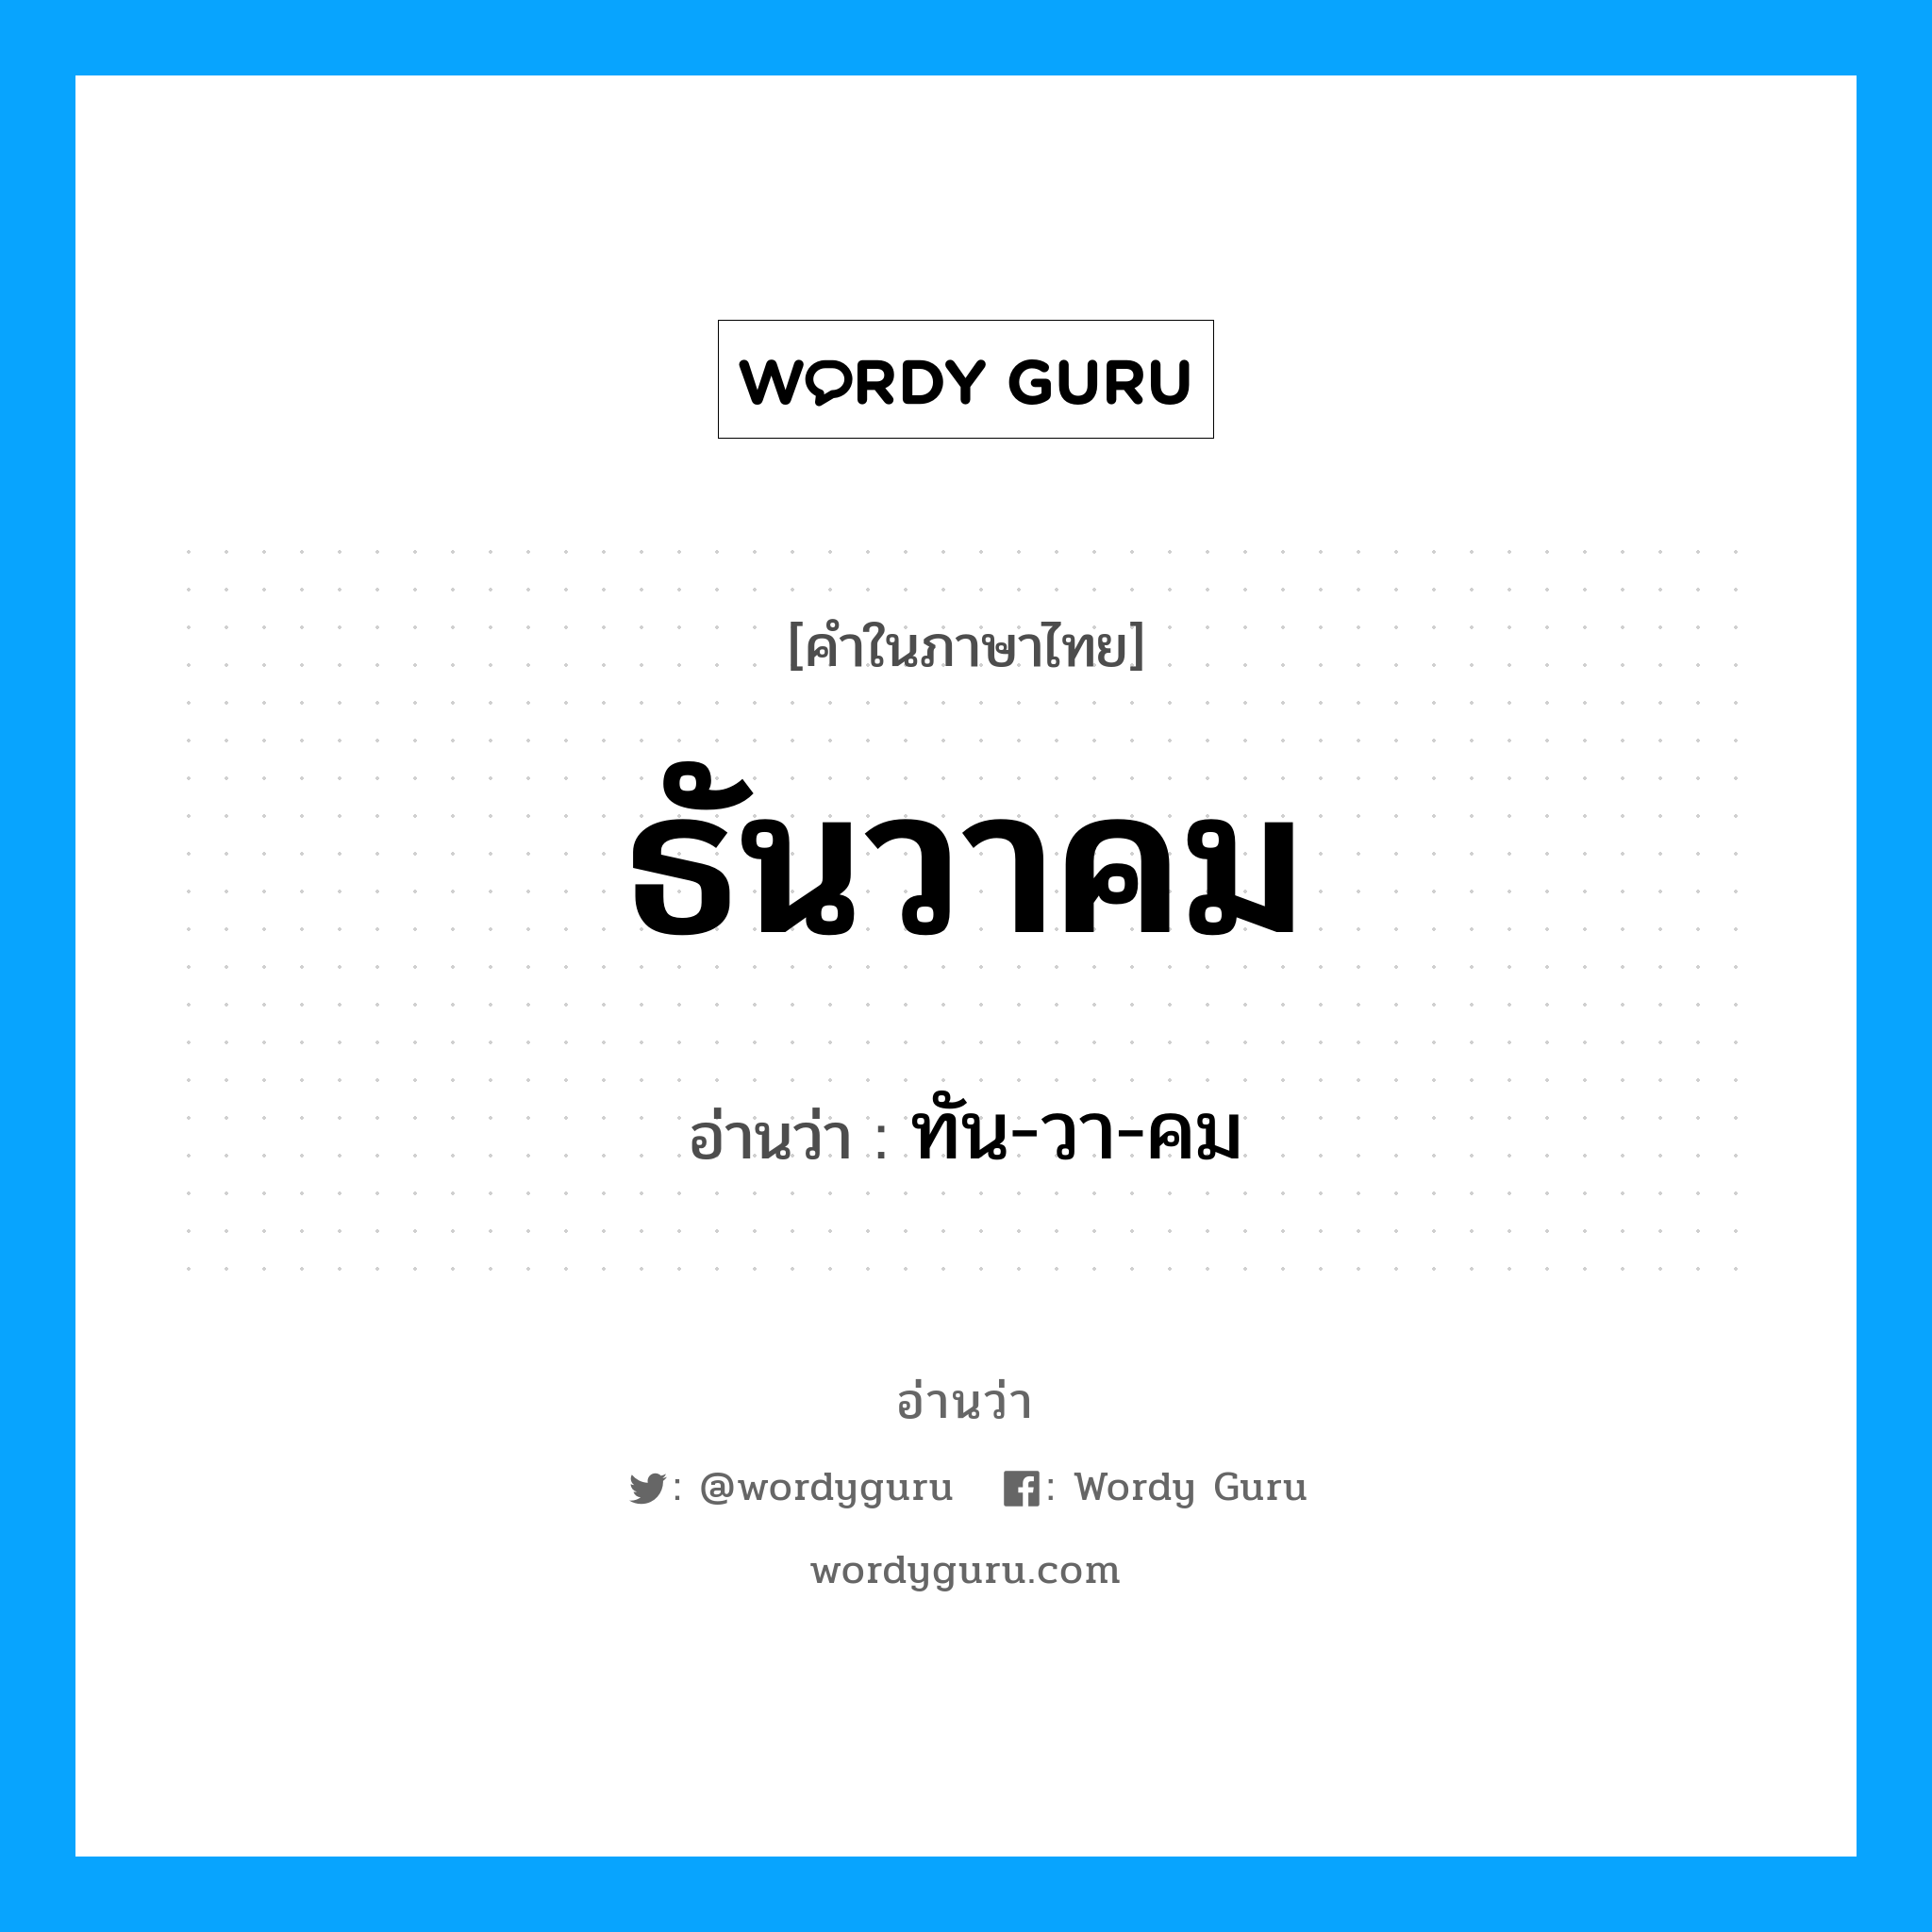 ธันวาคม อ่านว่า?, คำในภาษาไทย ธันวาคม อ่านว่า ทัน-วา-คม หมวด เดือน หมวด เดือน